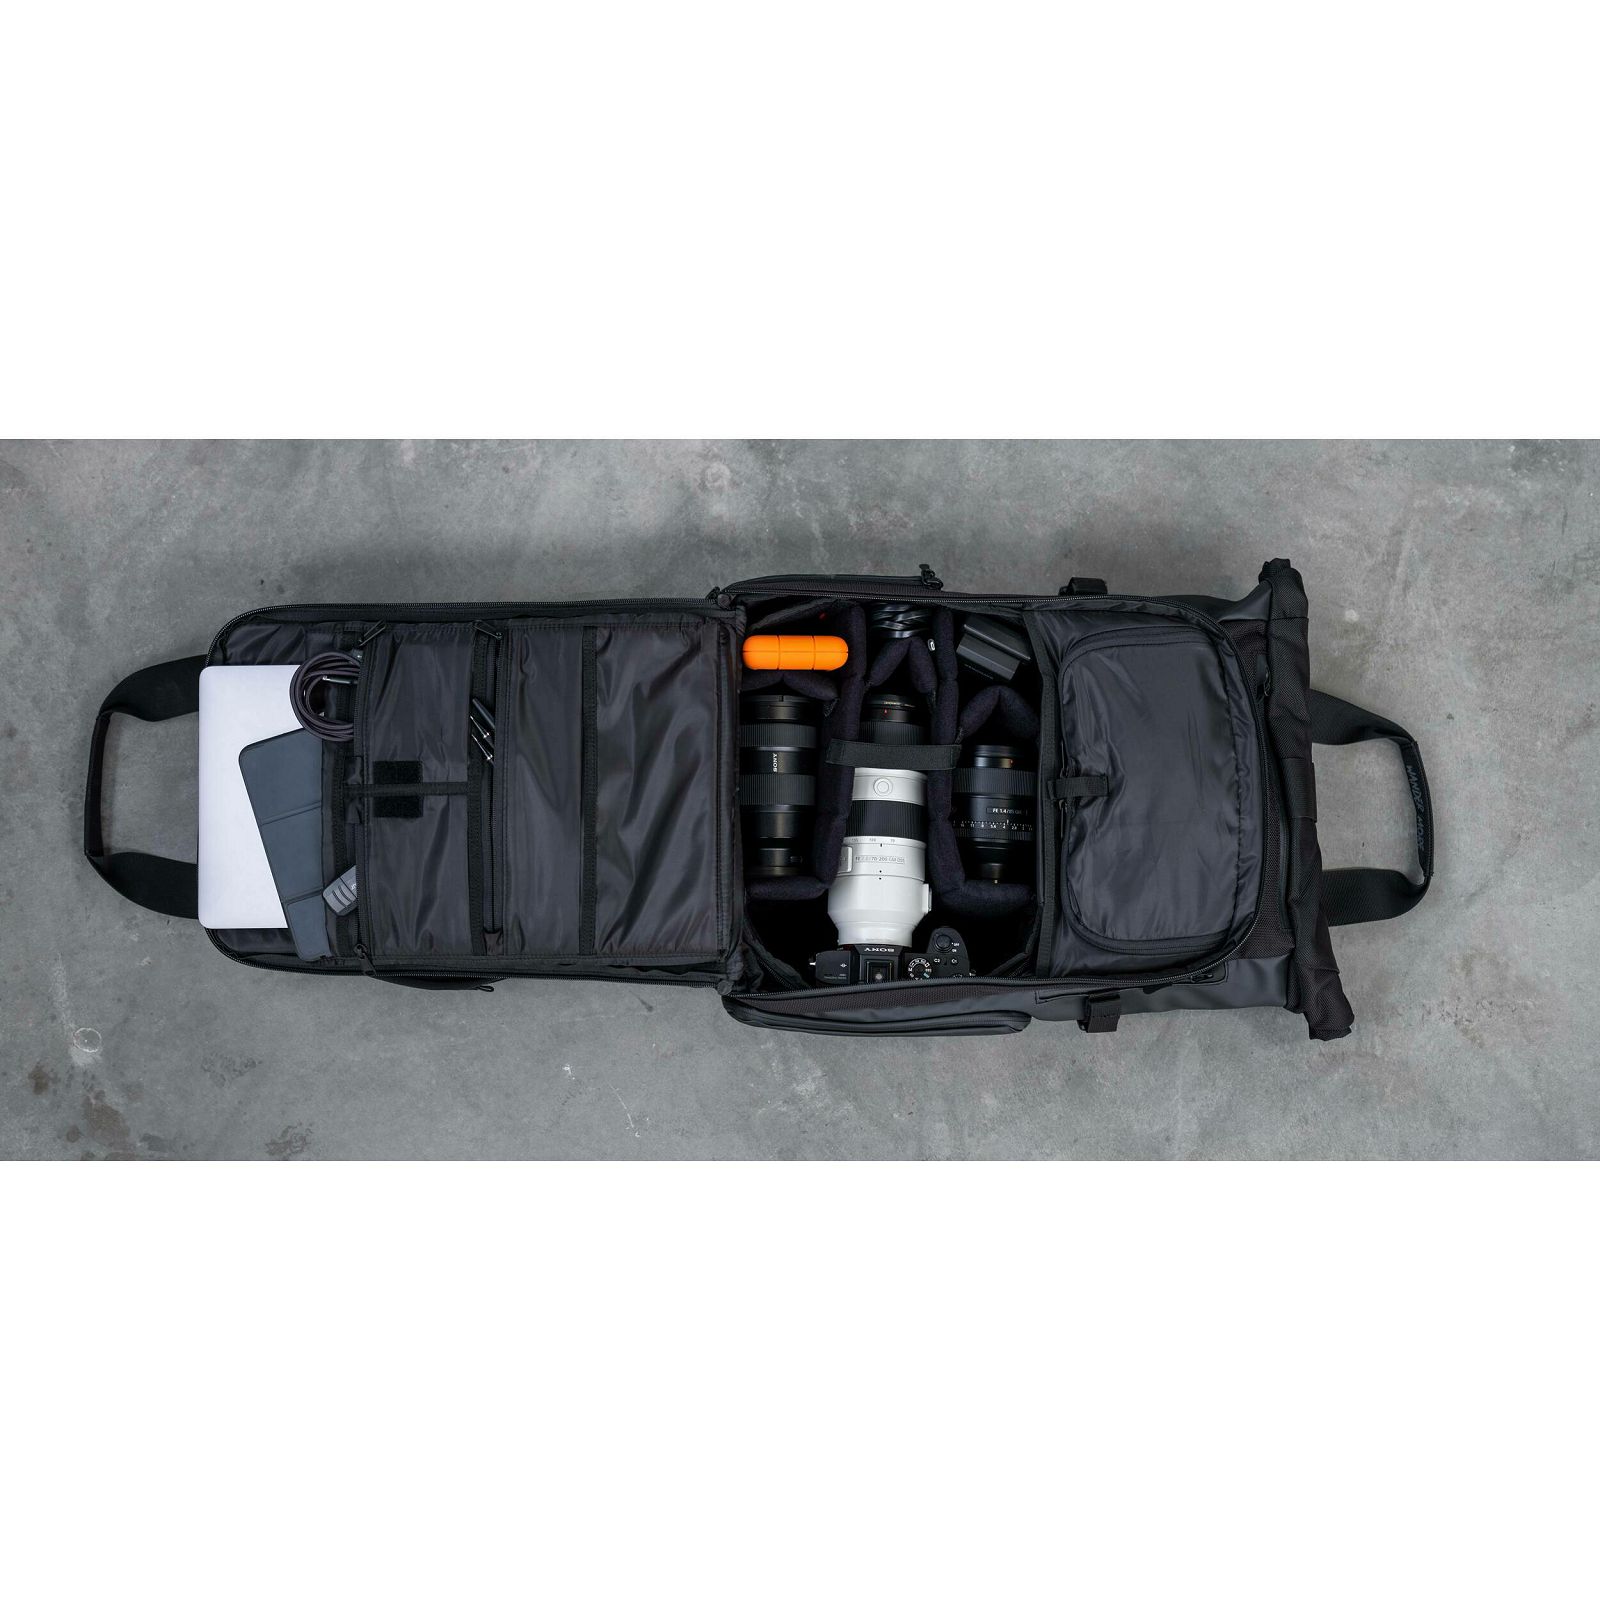 Wandrd Prvke 31L V3 Black Photo Bundle Backpack ruksak za foto opremu (PK31-BK-PB-3)